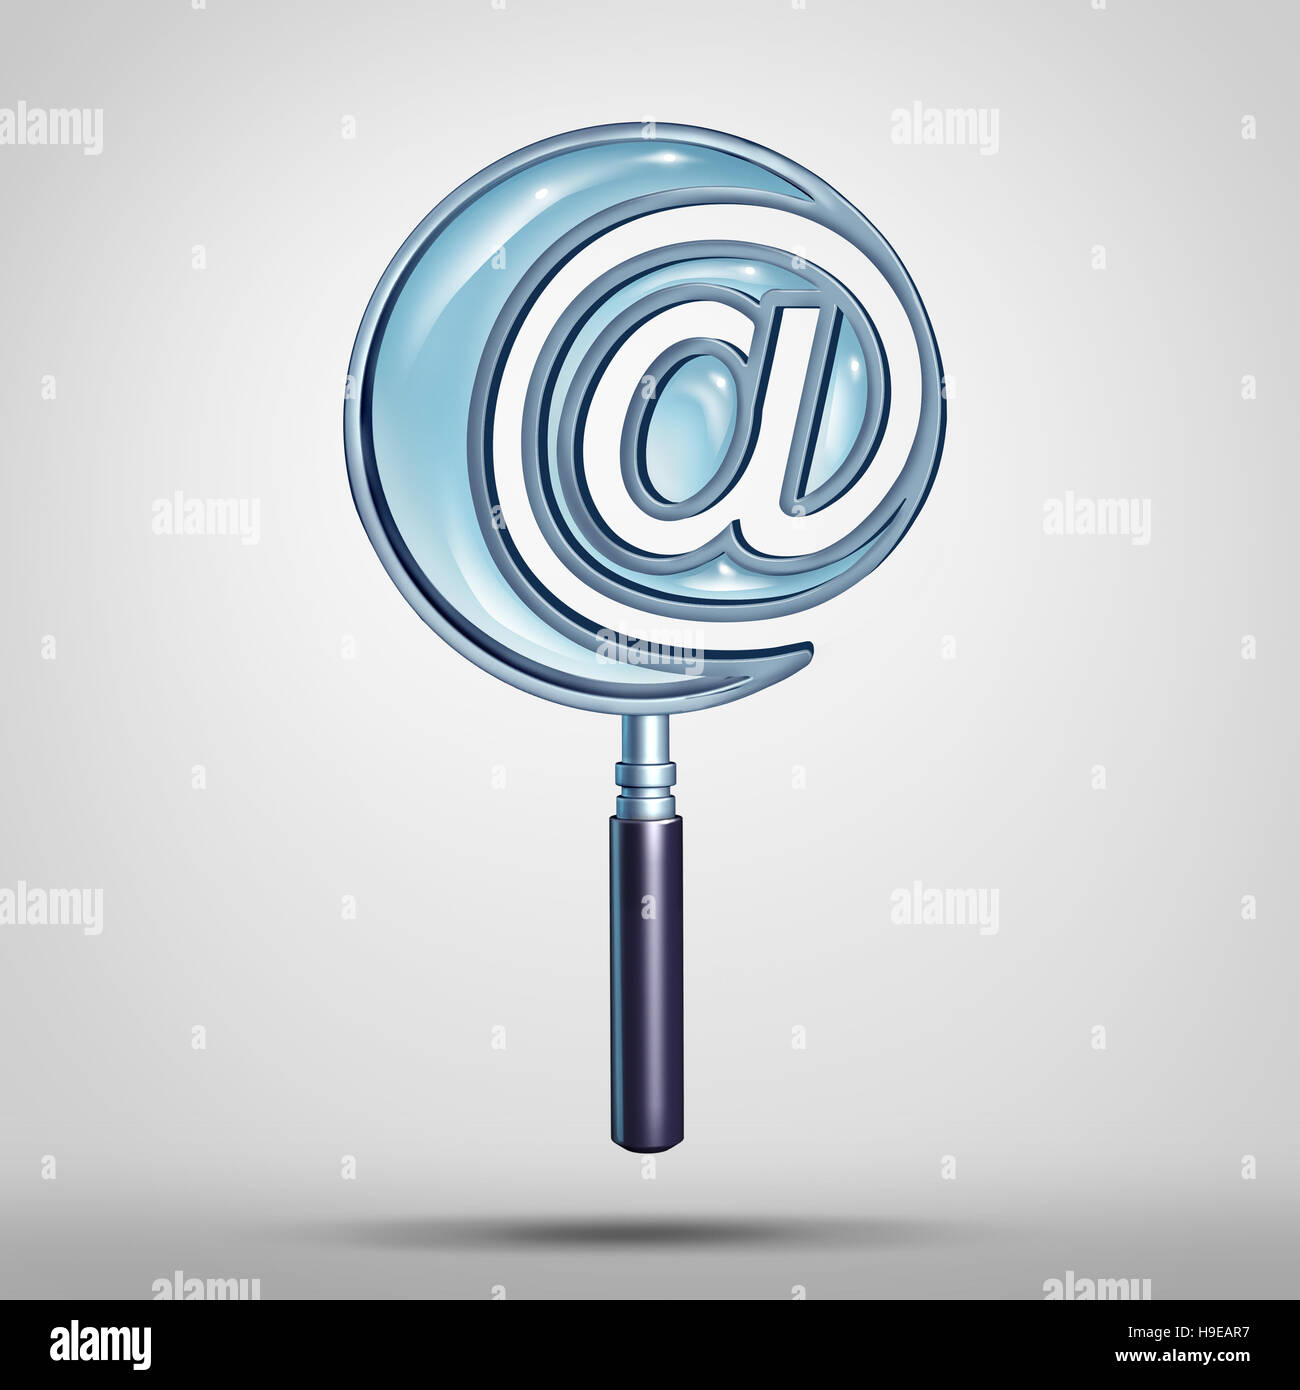 La technologie de recherche internet et e-mail concept comme une loupe sous forme d'un e-mail à l'inscription d'un symbole ou icône comme un site web et de métaphore cybernétique Banque D'Images